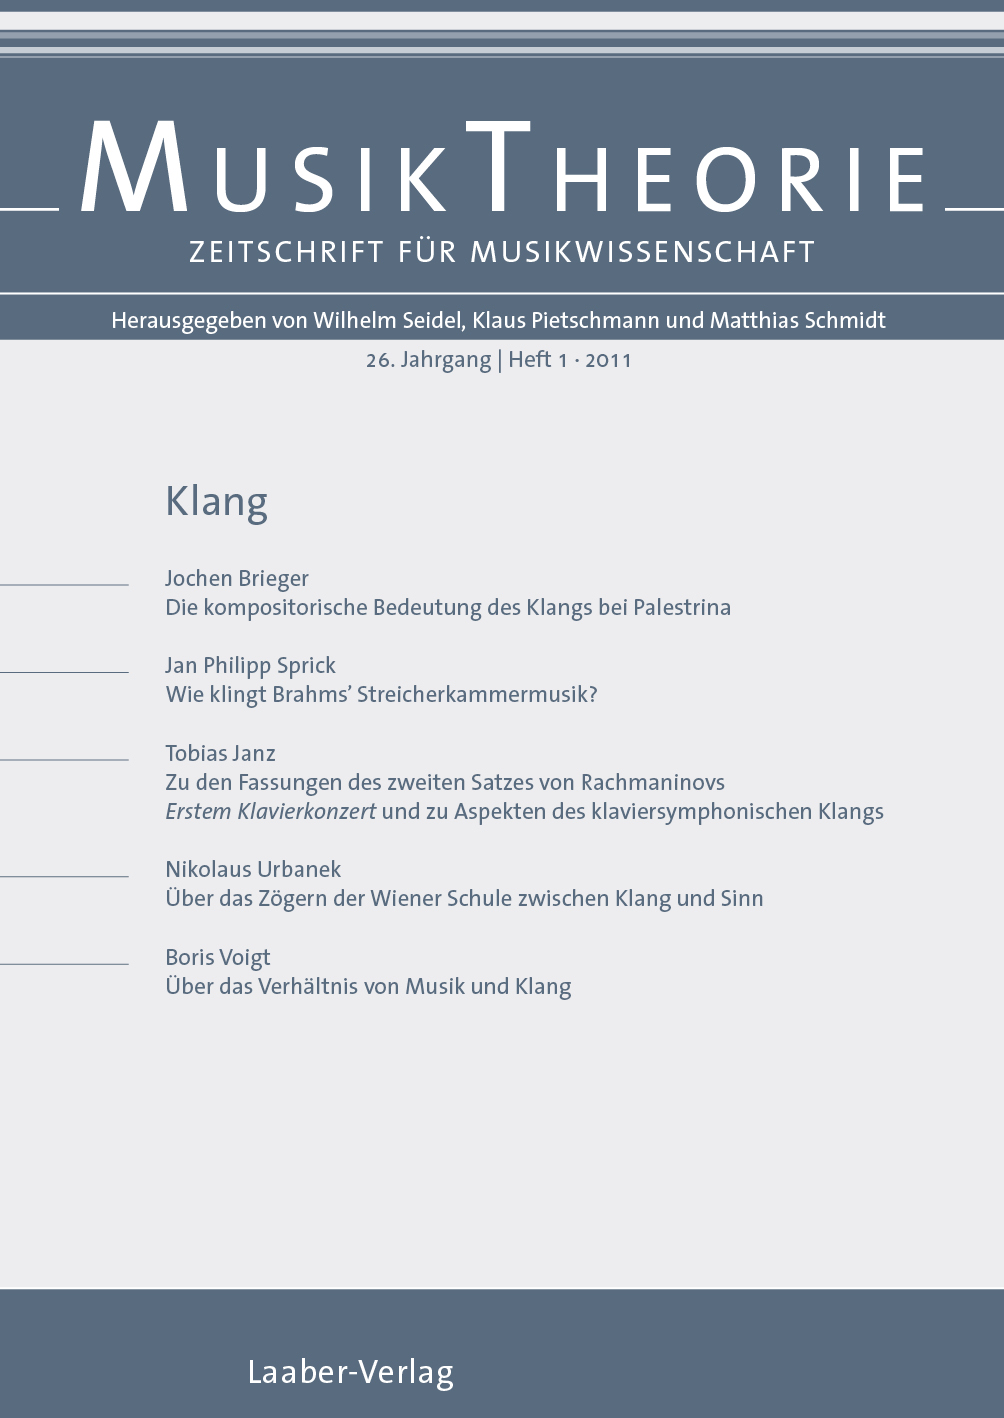 Musiktheorie Heft 1/2011